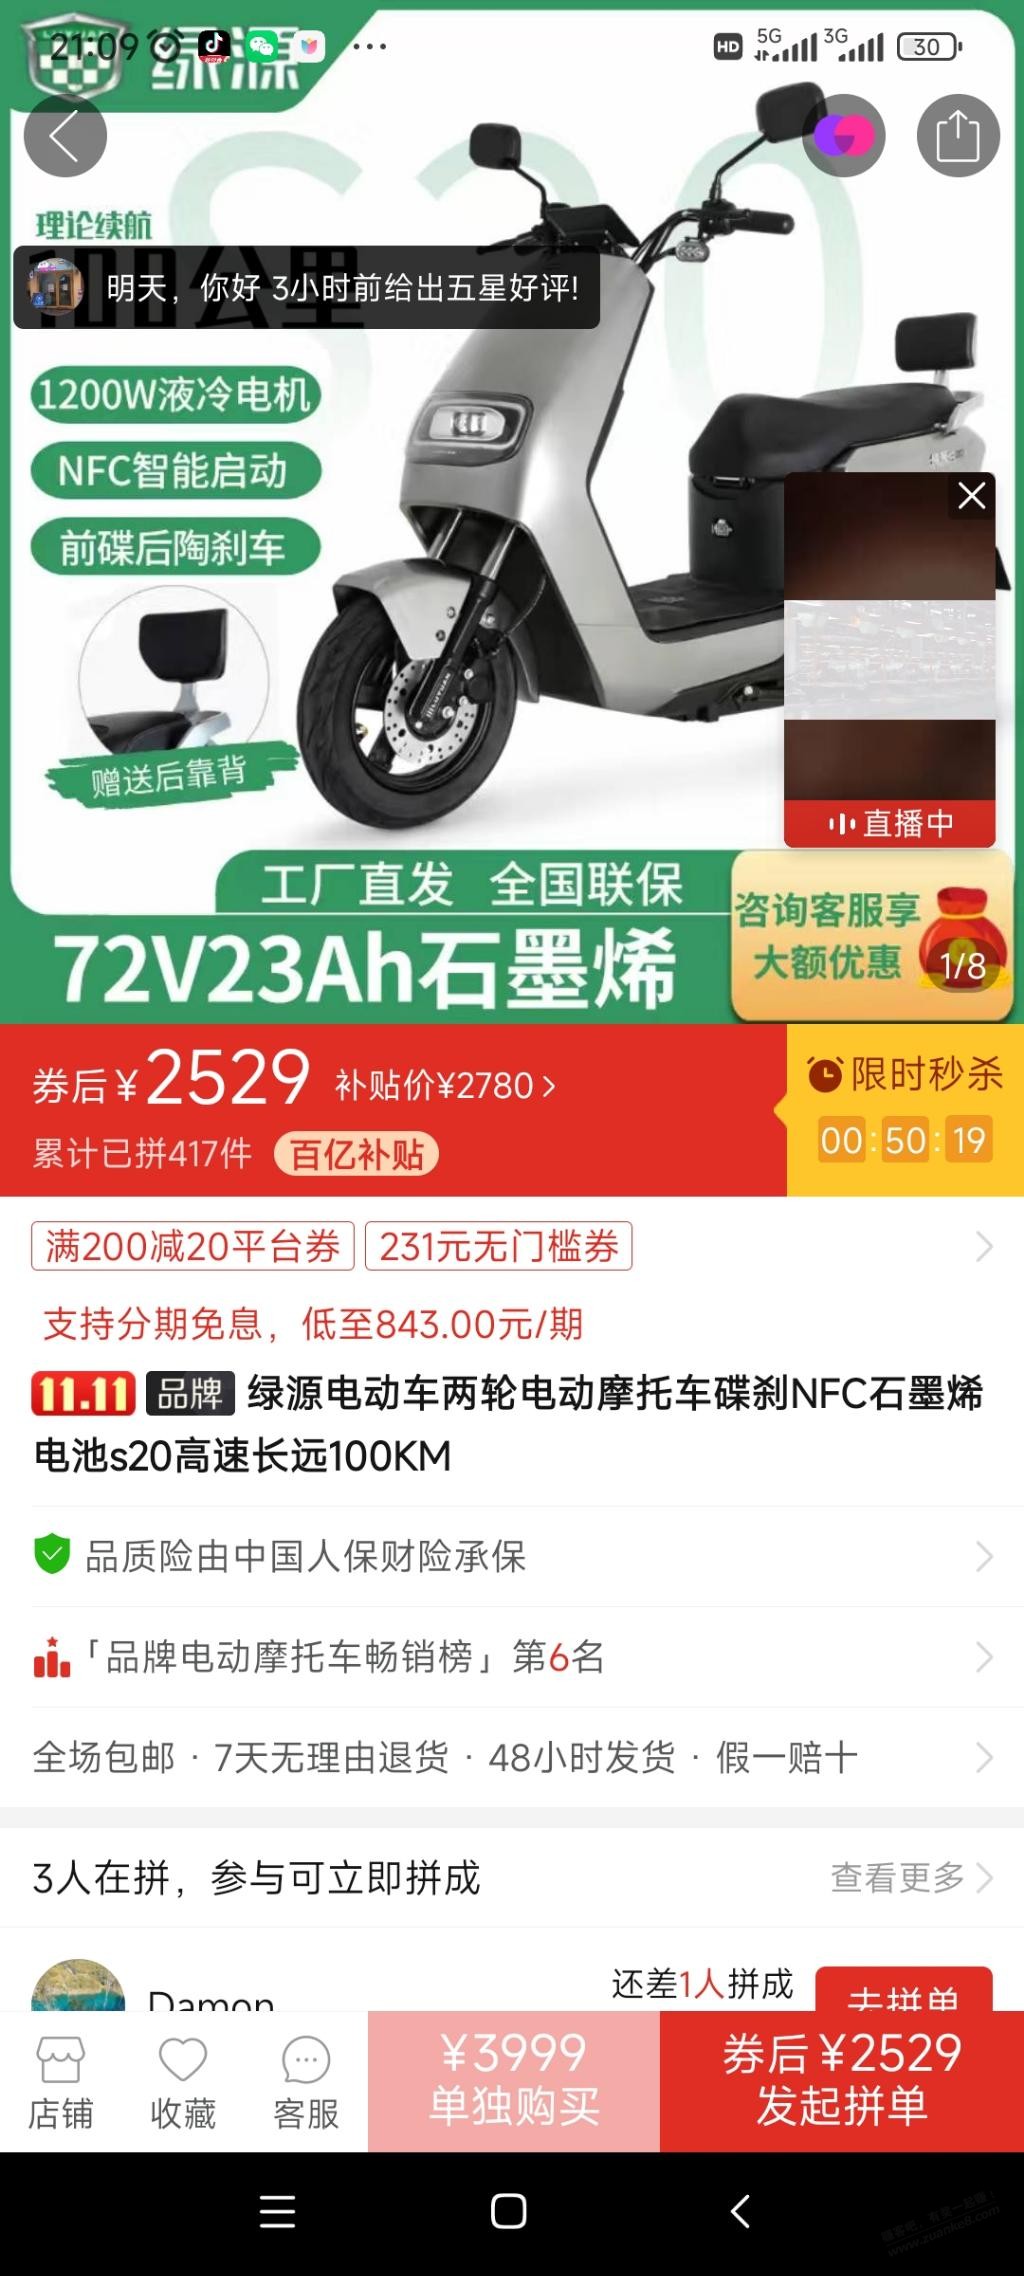 绿源电动车好价-惠小助(52huixz.com)